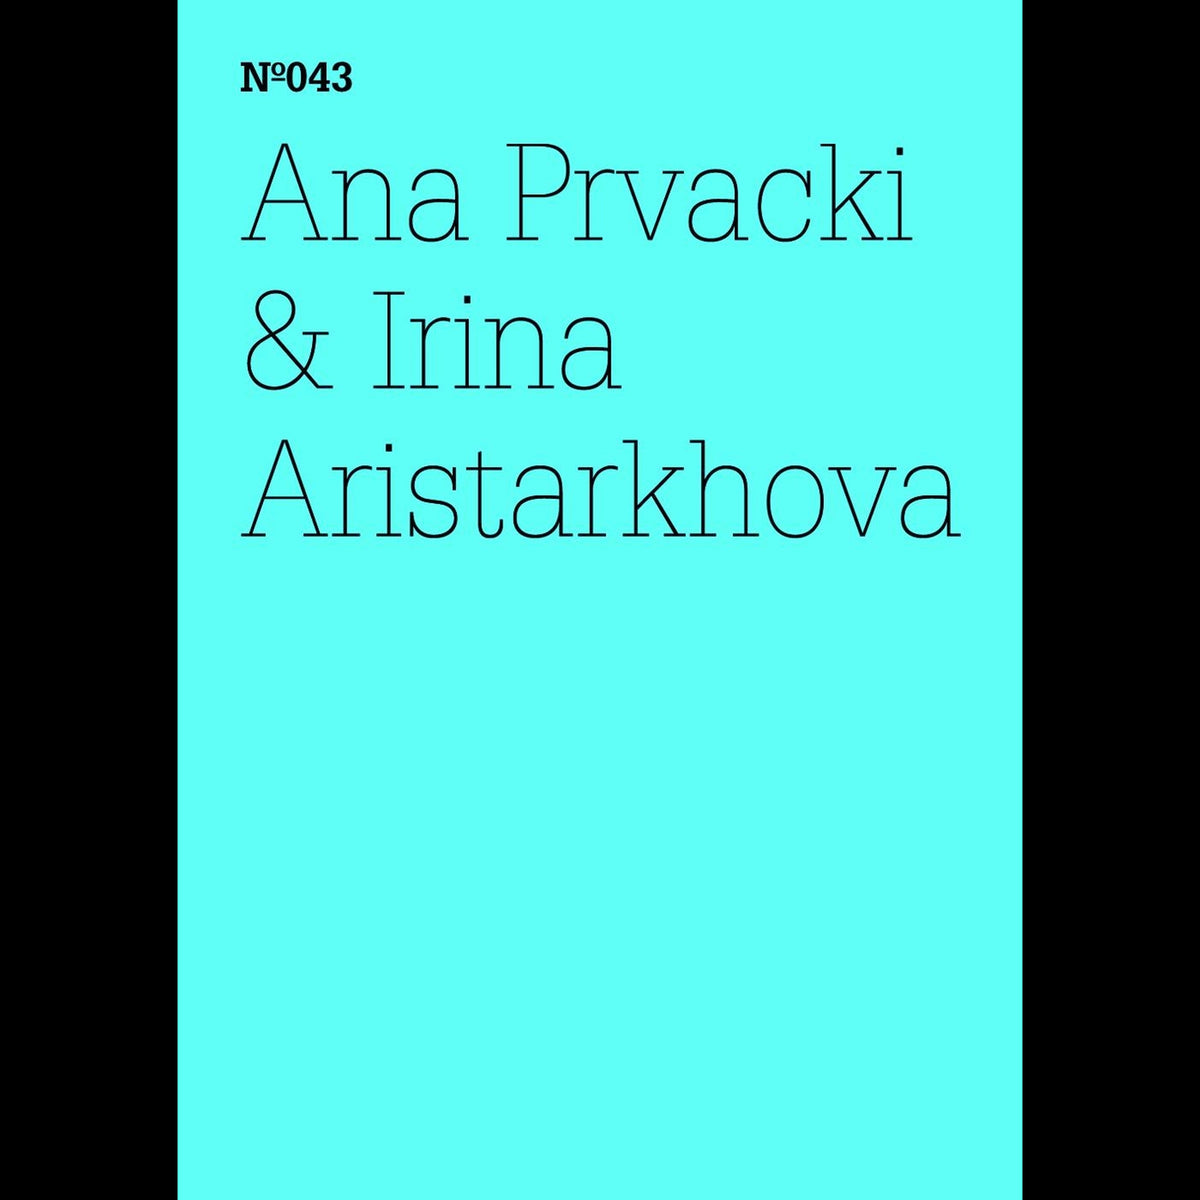 Coverbild Ana Prvacki & Irina Aristarkhova